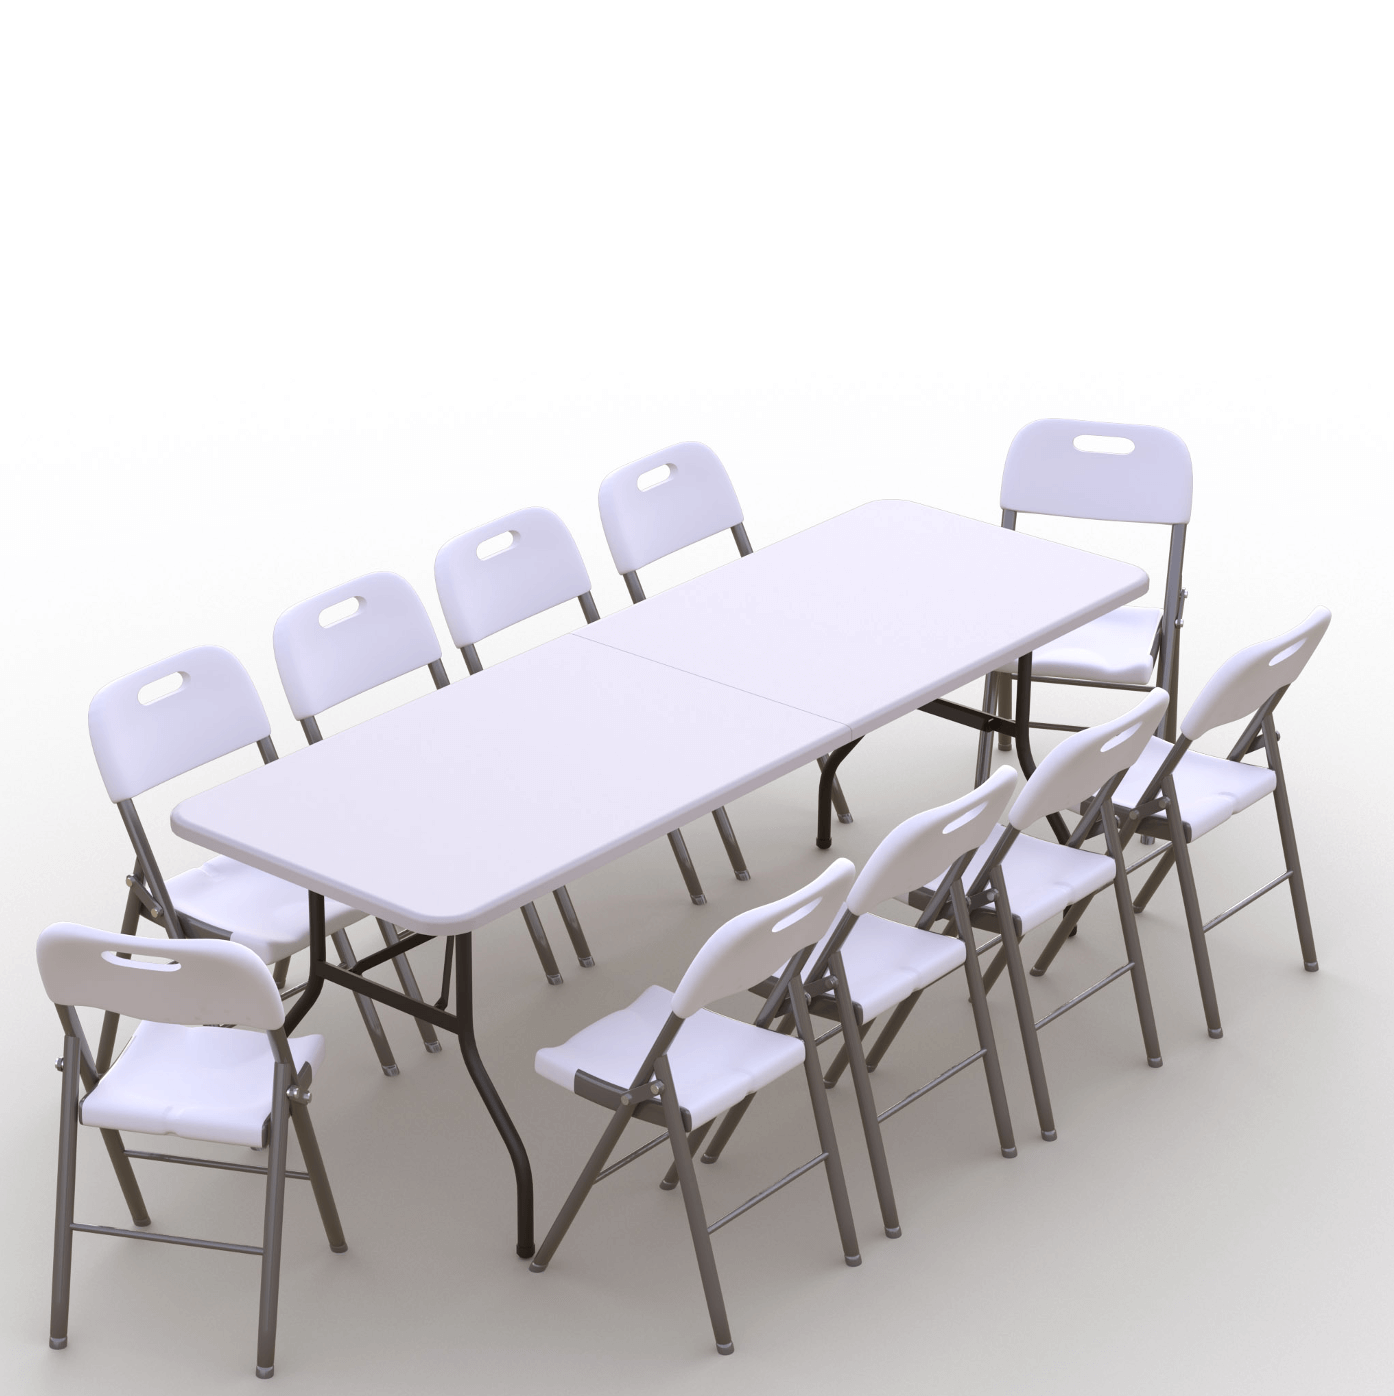 Sulankstomų baldų komplektas: Stalas 240 baltas, 10 kėdžių Premium baltų